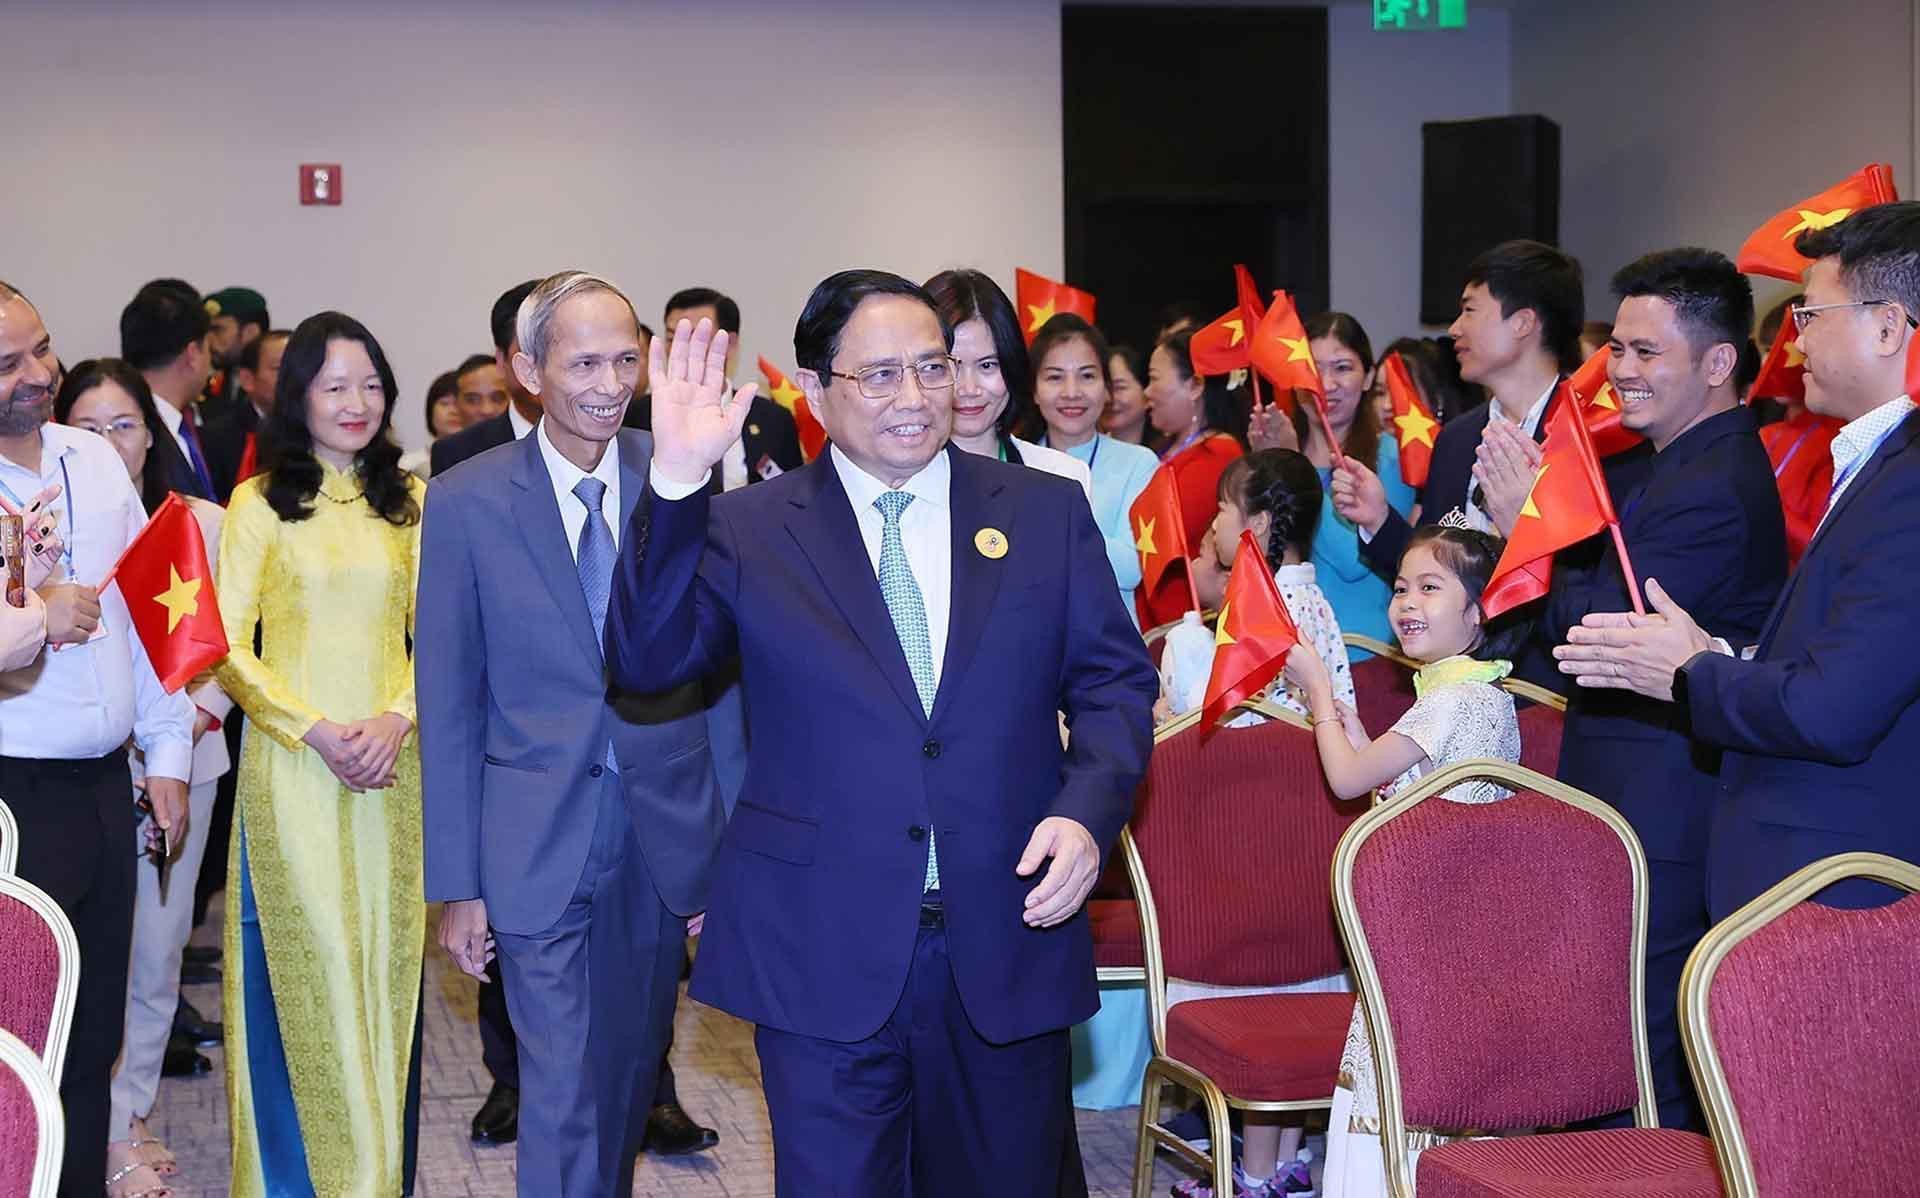 Thủ tướng gặp gỡ cán bộ, nhân viên Đại sứ quán và đại diện cộng đồng người Việt Nam tại Saudi Arabia